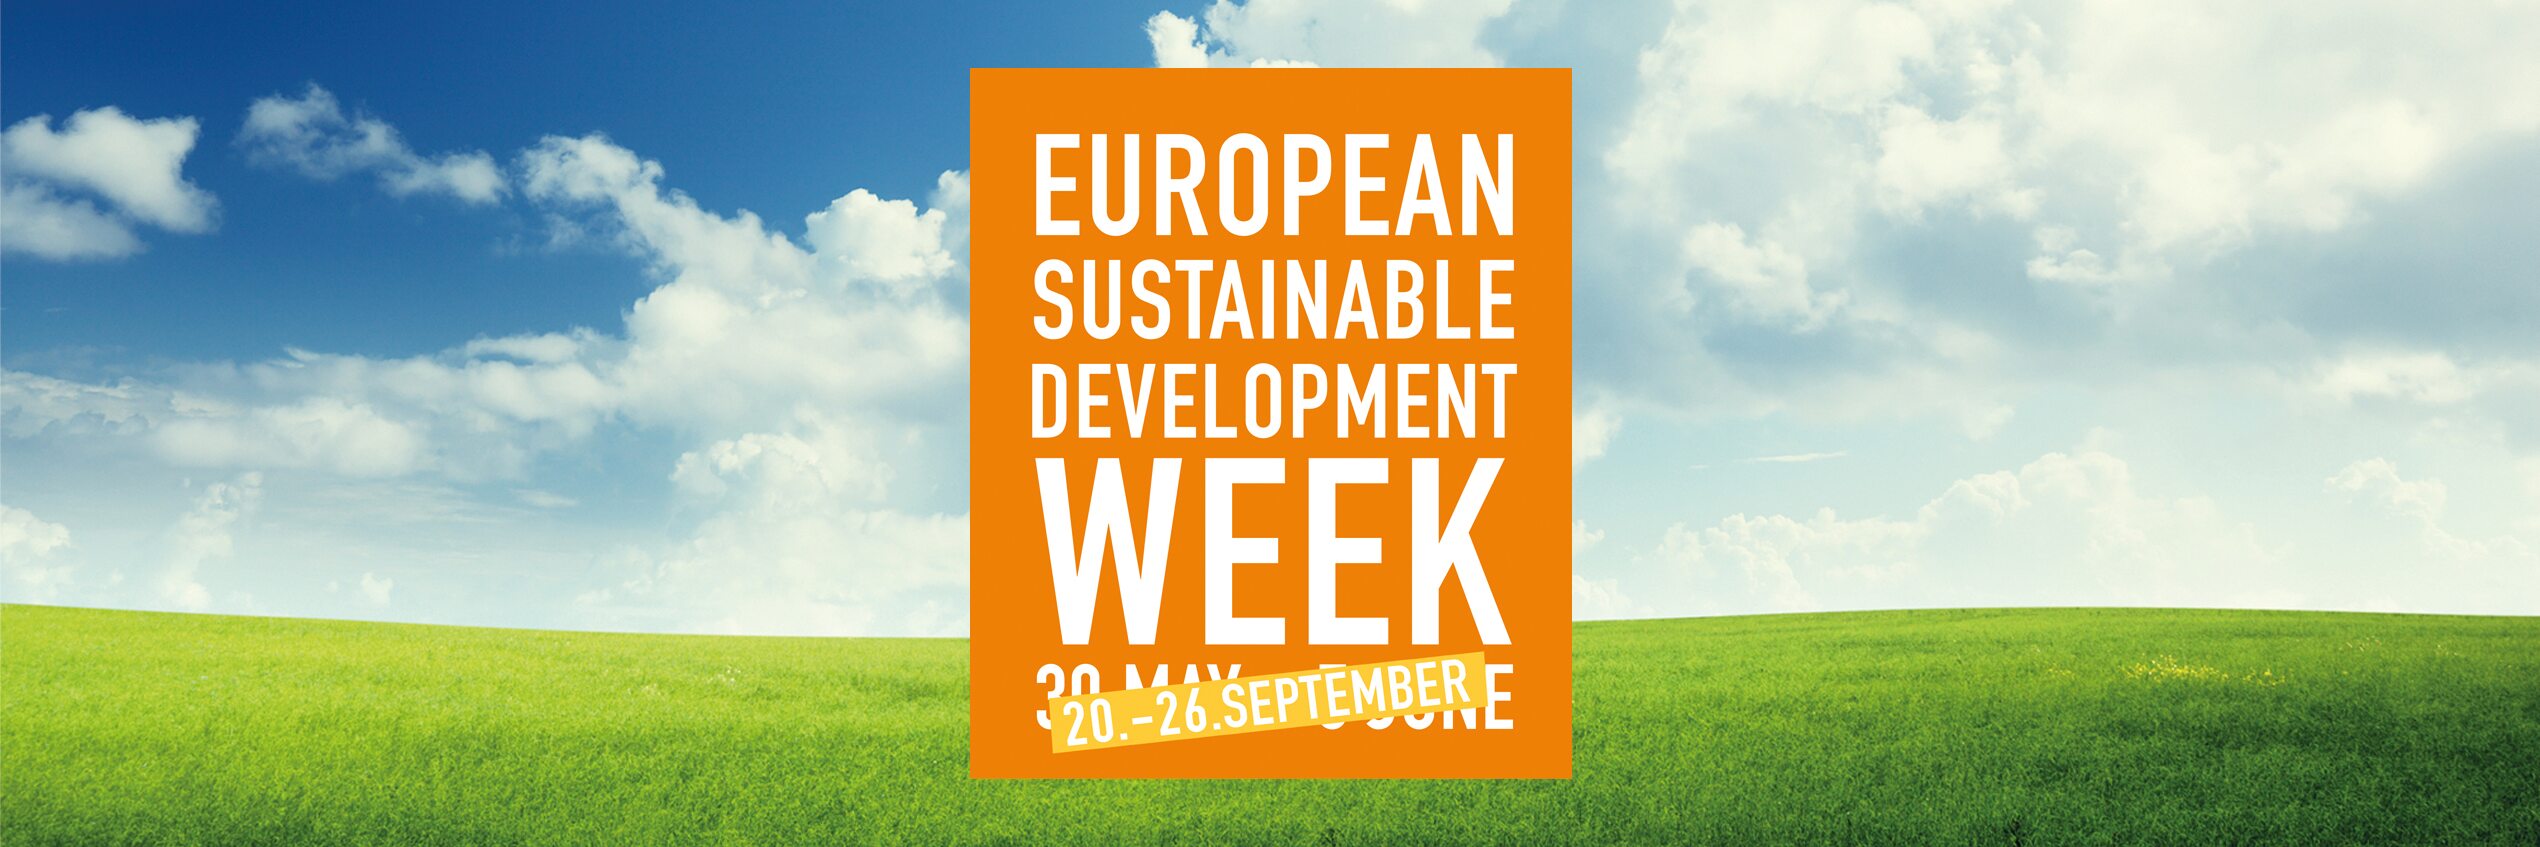 Diehl Metering participates in European Sustainable Development Week